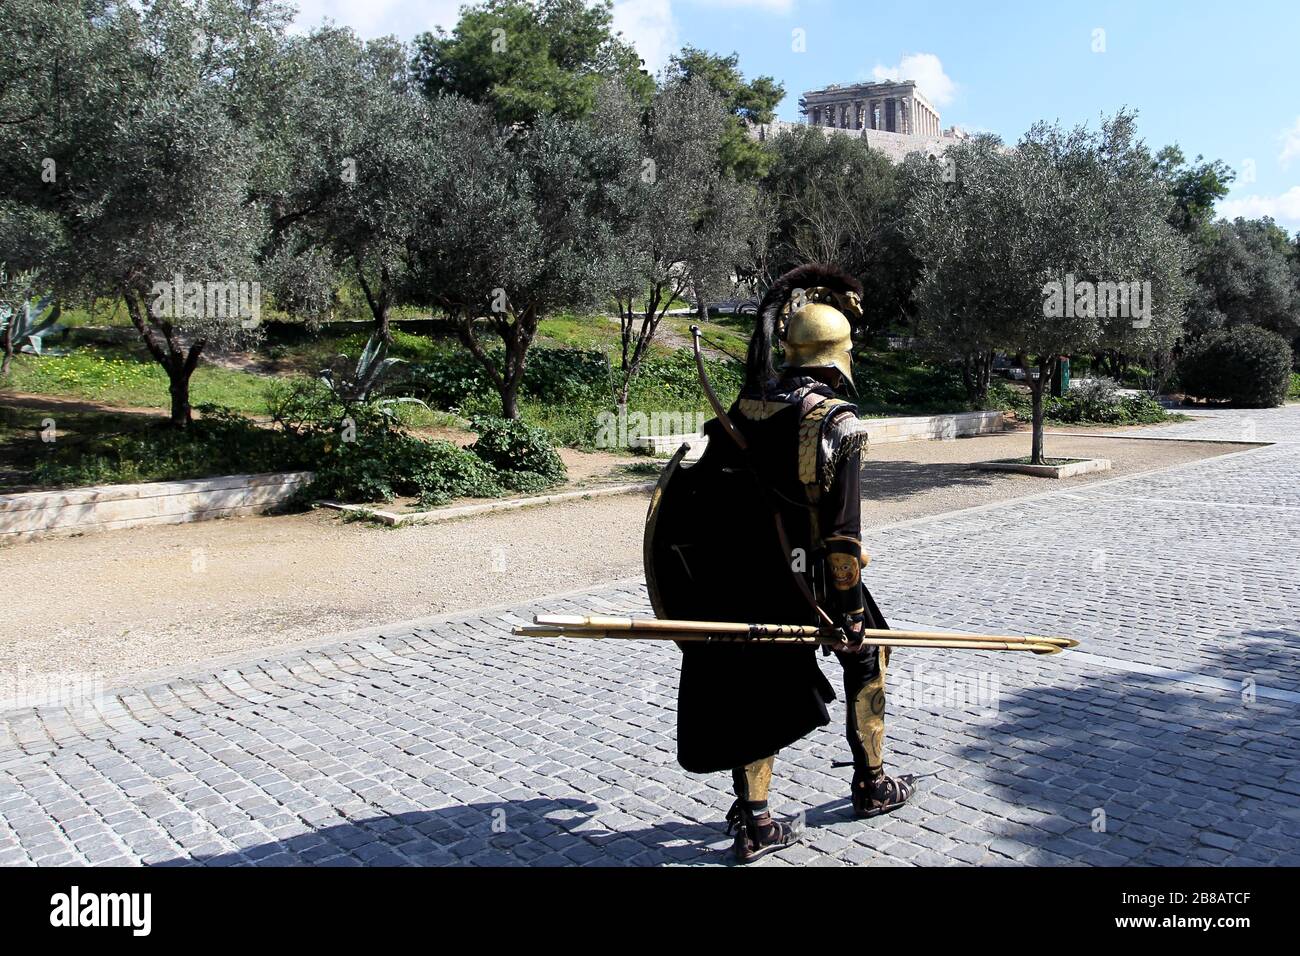 Die Fußgängerzone Dionyssiou Areopagitou unter der Akropolis, leer vor Touristen. Der griechische Tourismus wurde von Annullierungen inmitten eines Coronavirus-Ausbruchs hart getroffen. Stockfoto